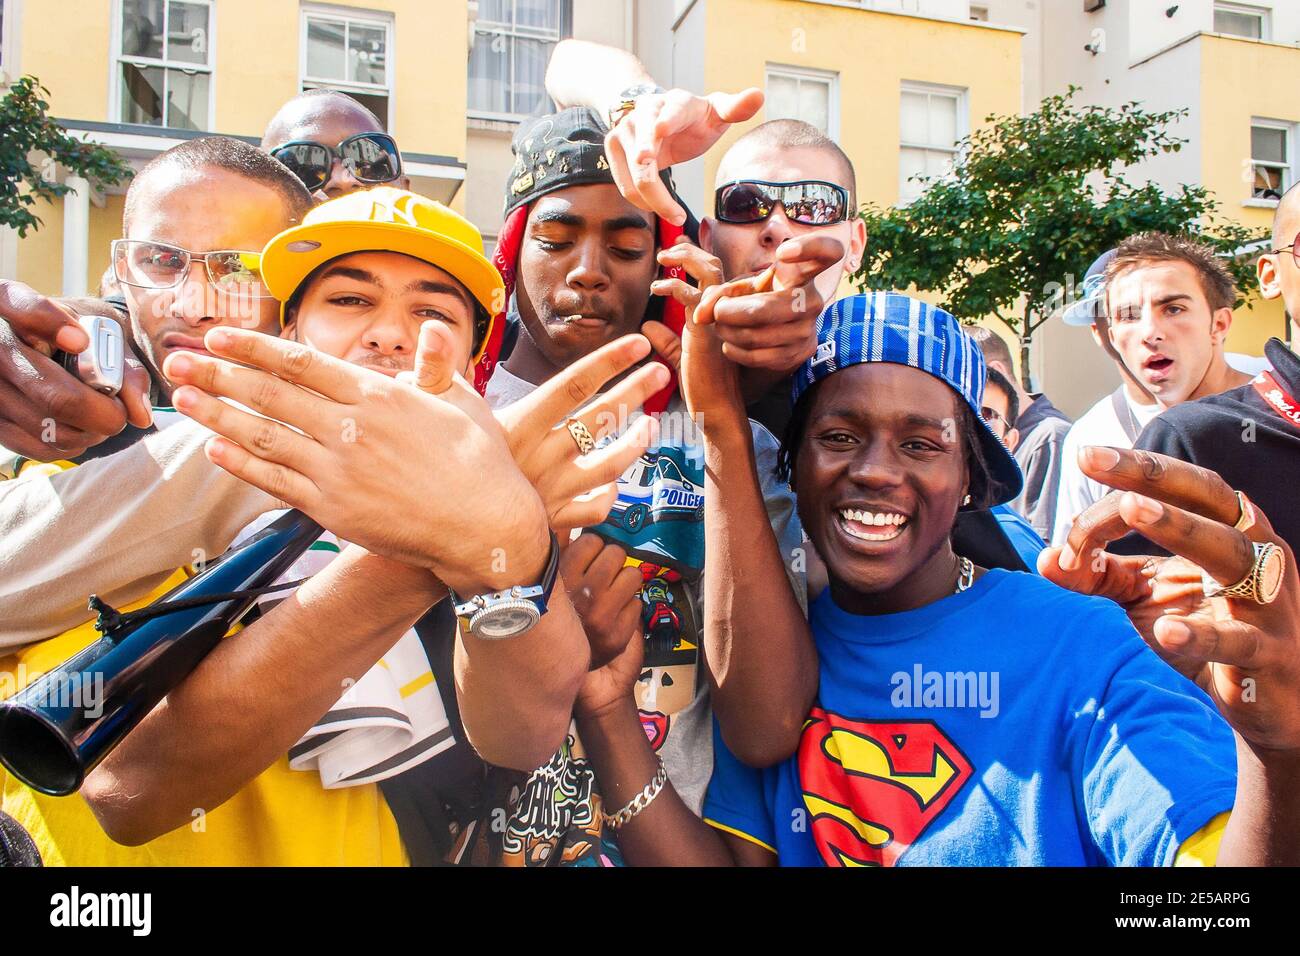 Gruppo di giovani che si sono benissimo a Notting Hill Carnival Foto Stock